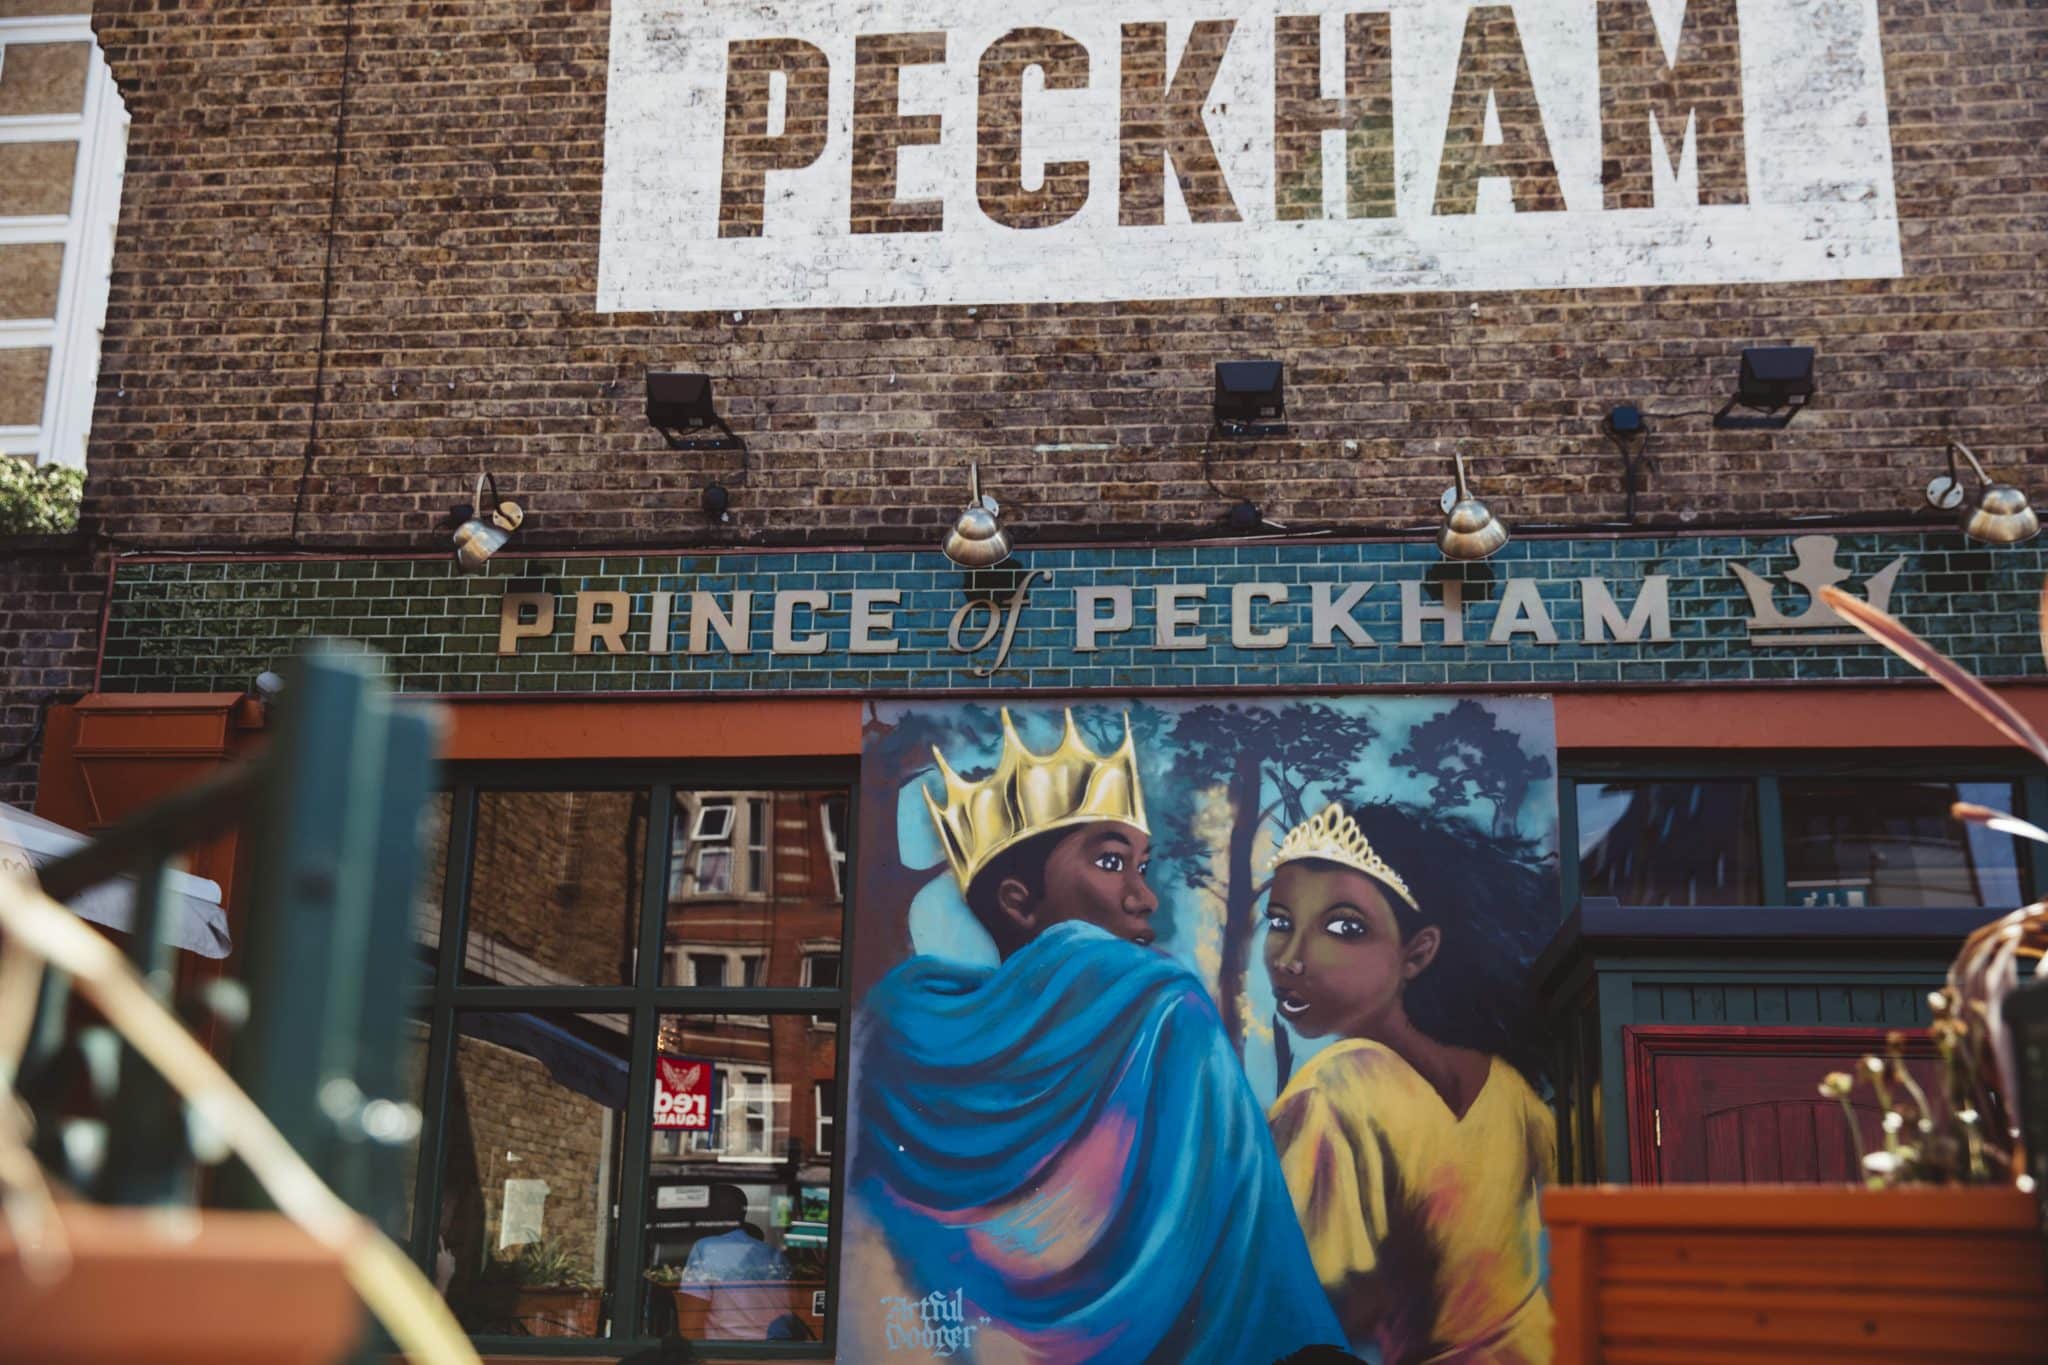 Prince of Peckham pub exterior